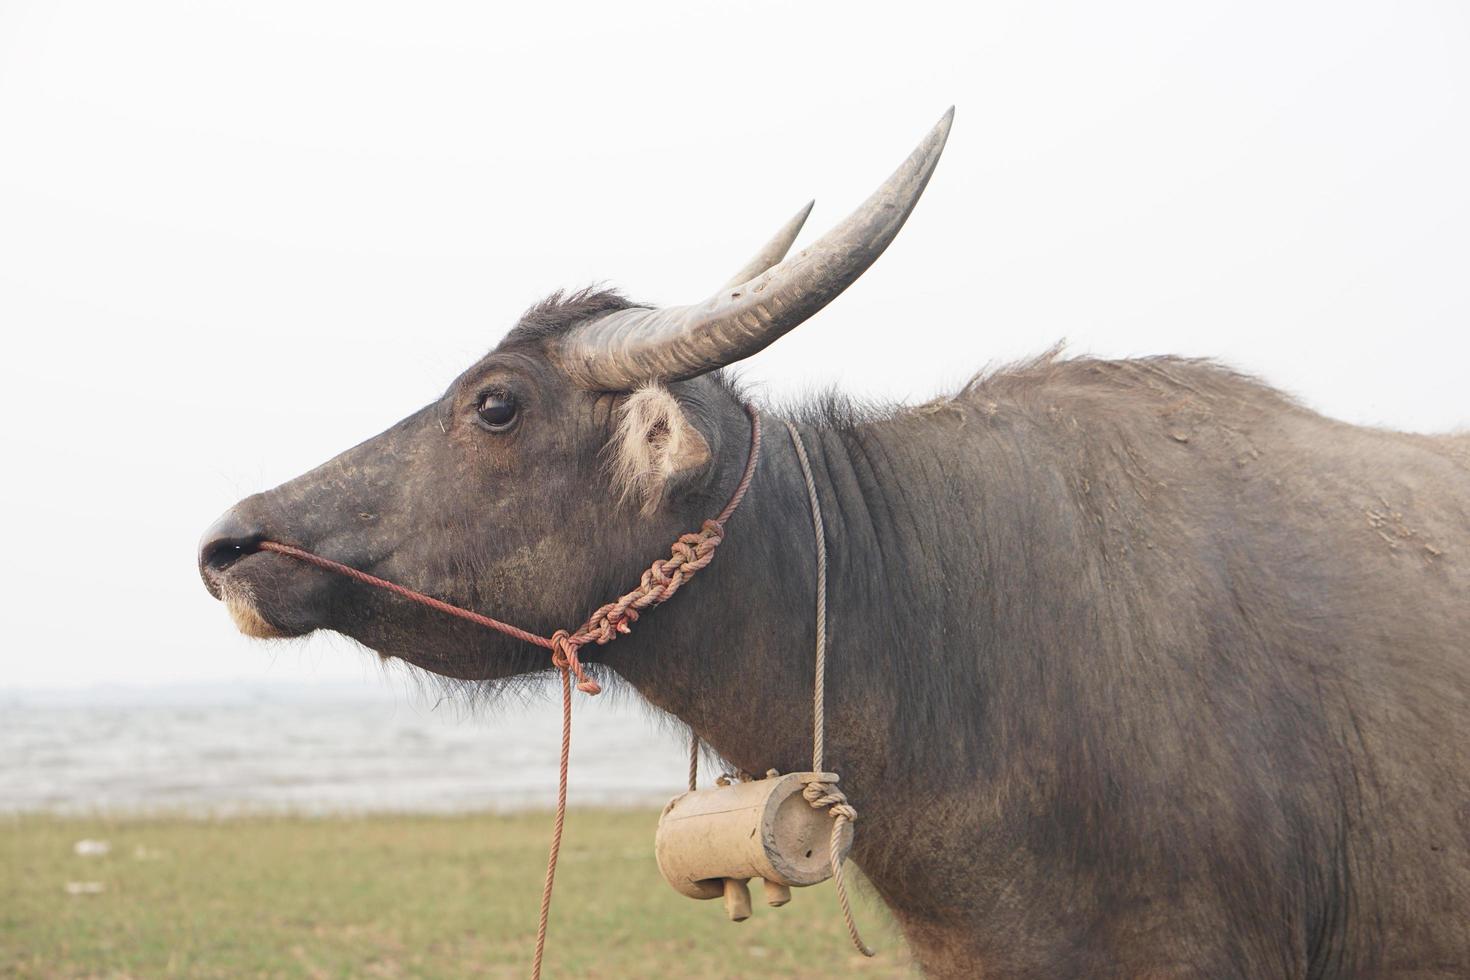 Thai buffalo farming in the field photo